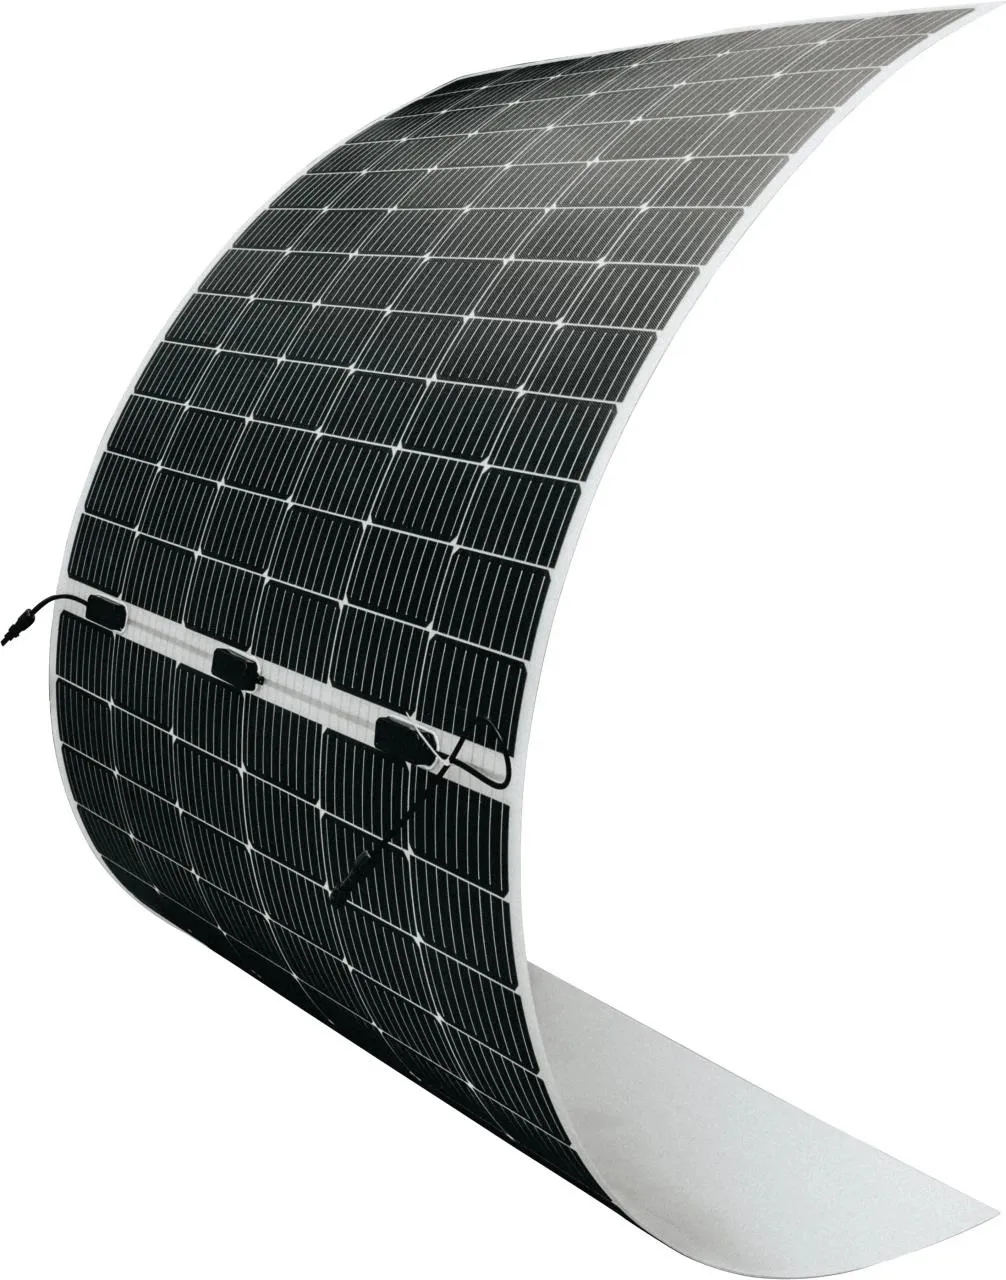 중국 공급 업체 중국에서 태양 전지 패널 가격 500w 유연한 태양 전지 패널 최저 가격 태양 전지 패널